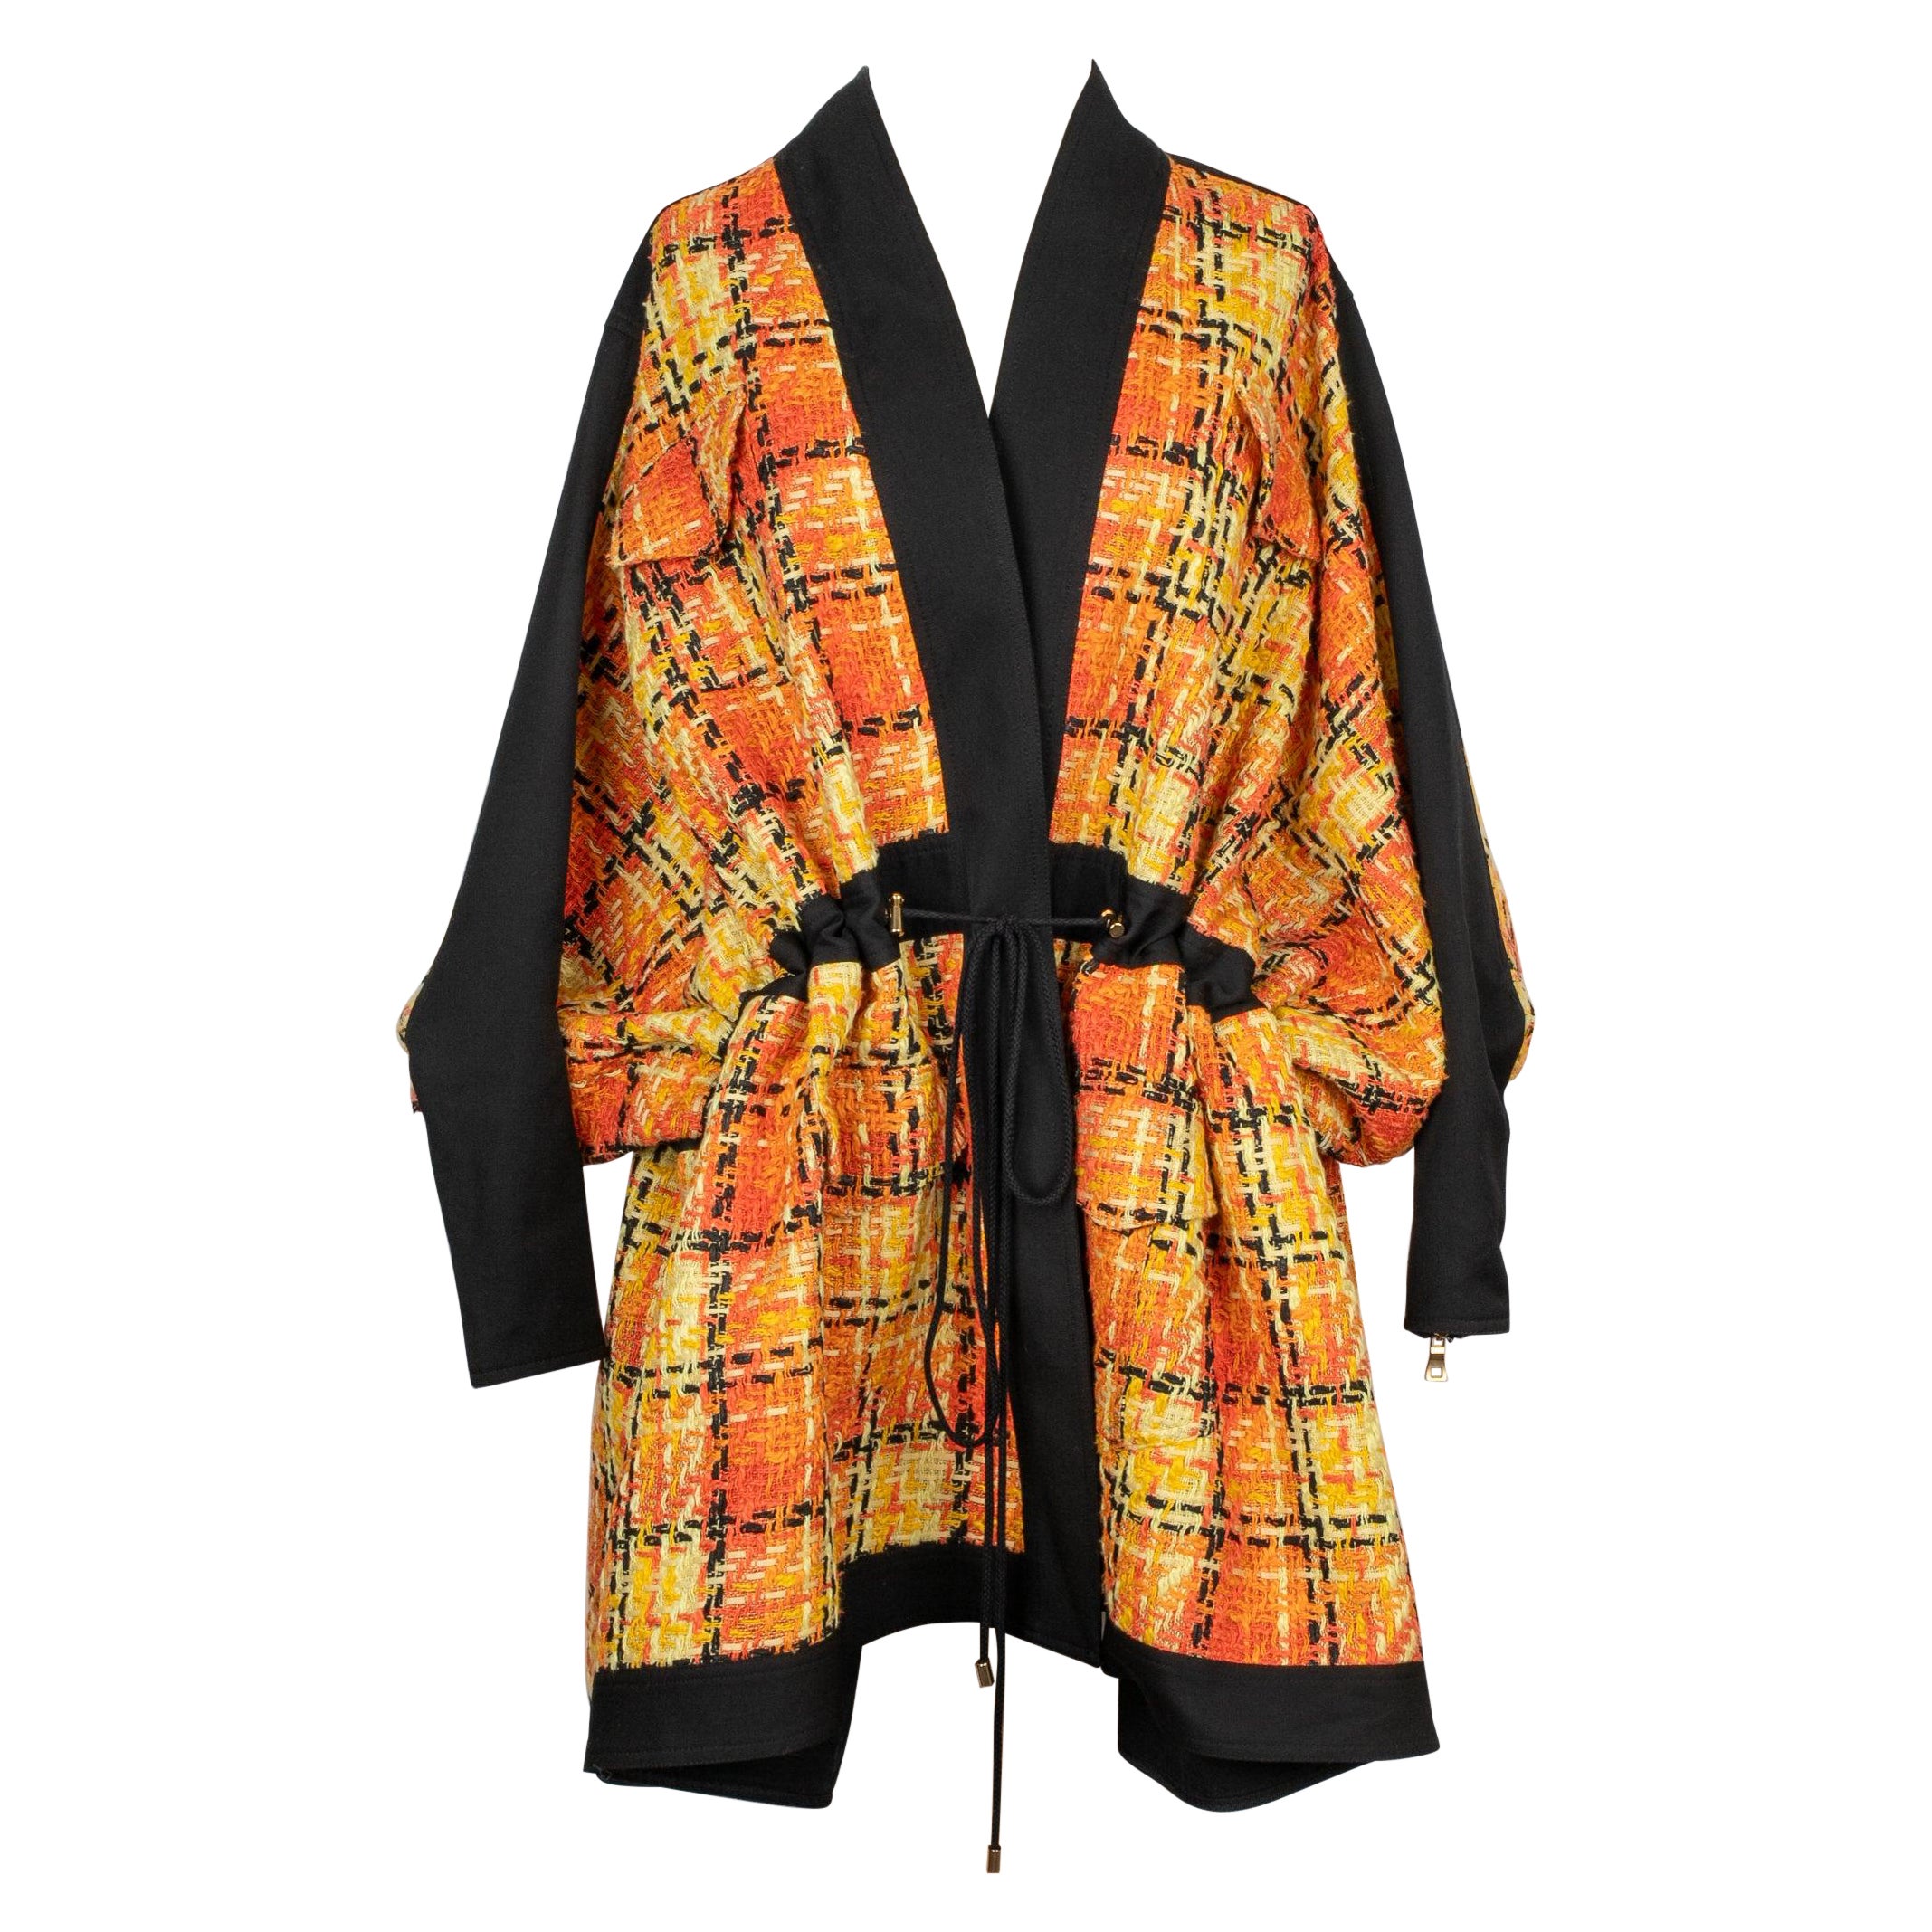 Balmain Tweed Coat in Orange and Yellow Tones For Sale